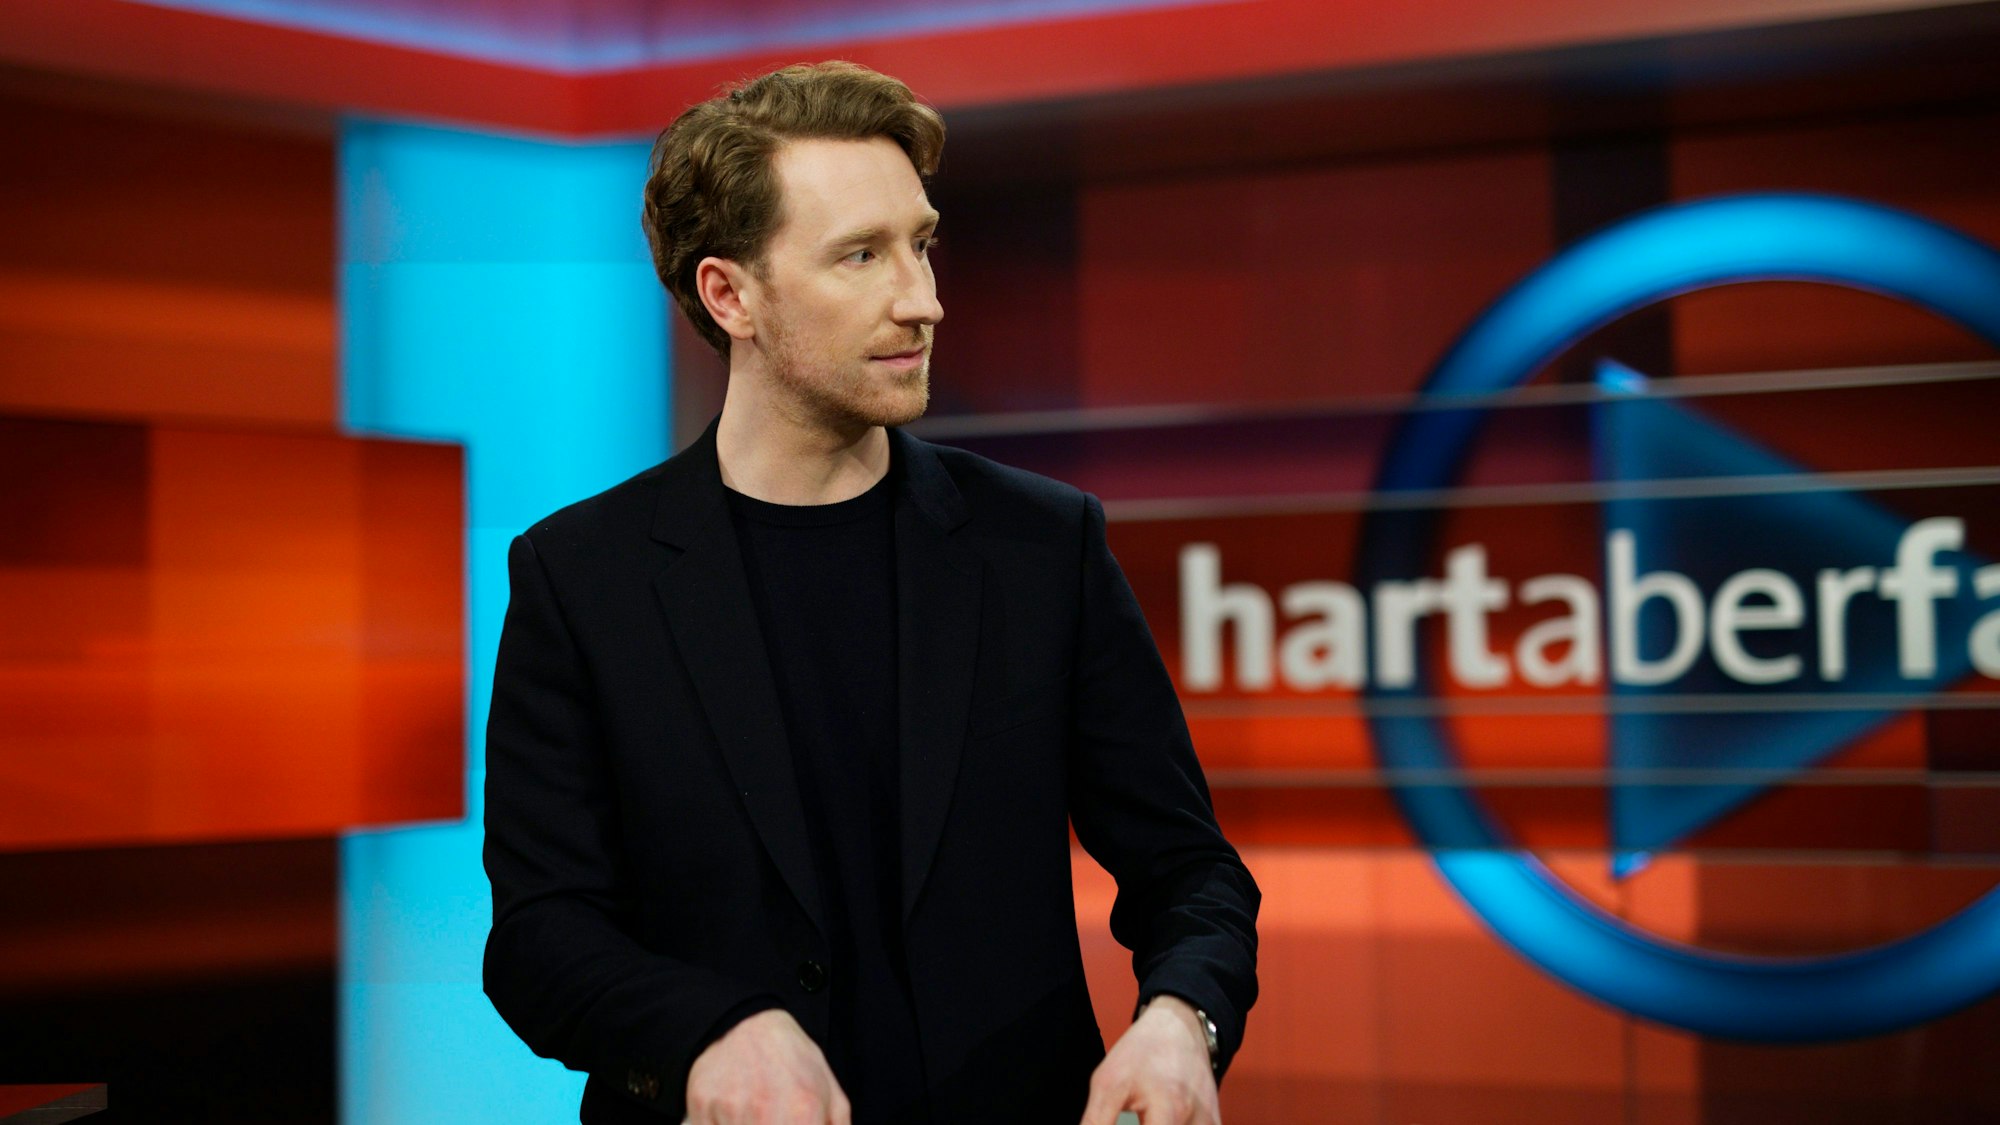 Louis Klamroth moderiert die ARD-Polit-Sendung „Hart aber fair“ als Nachfolger von Frank Plasberg seit Anfang 2023. Er möchte die Sendung offenbar anders gestalten. (Archivbild)